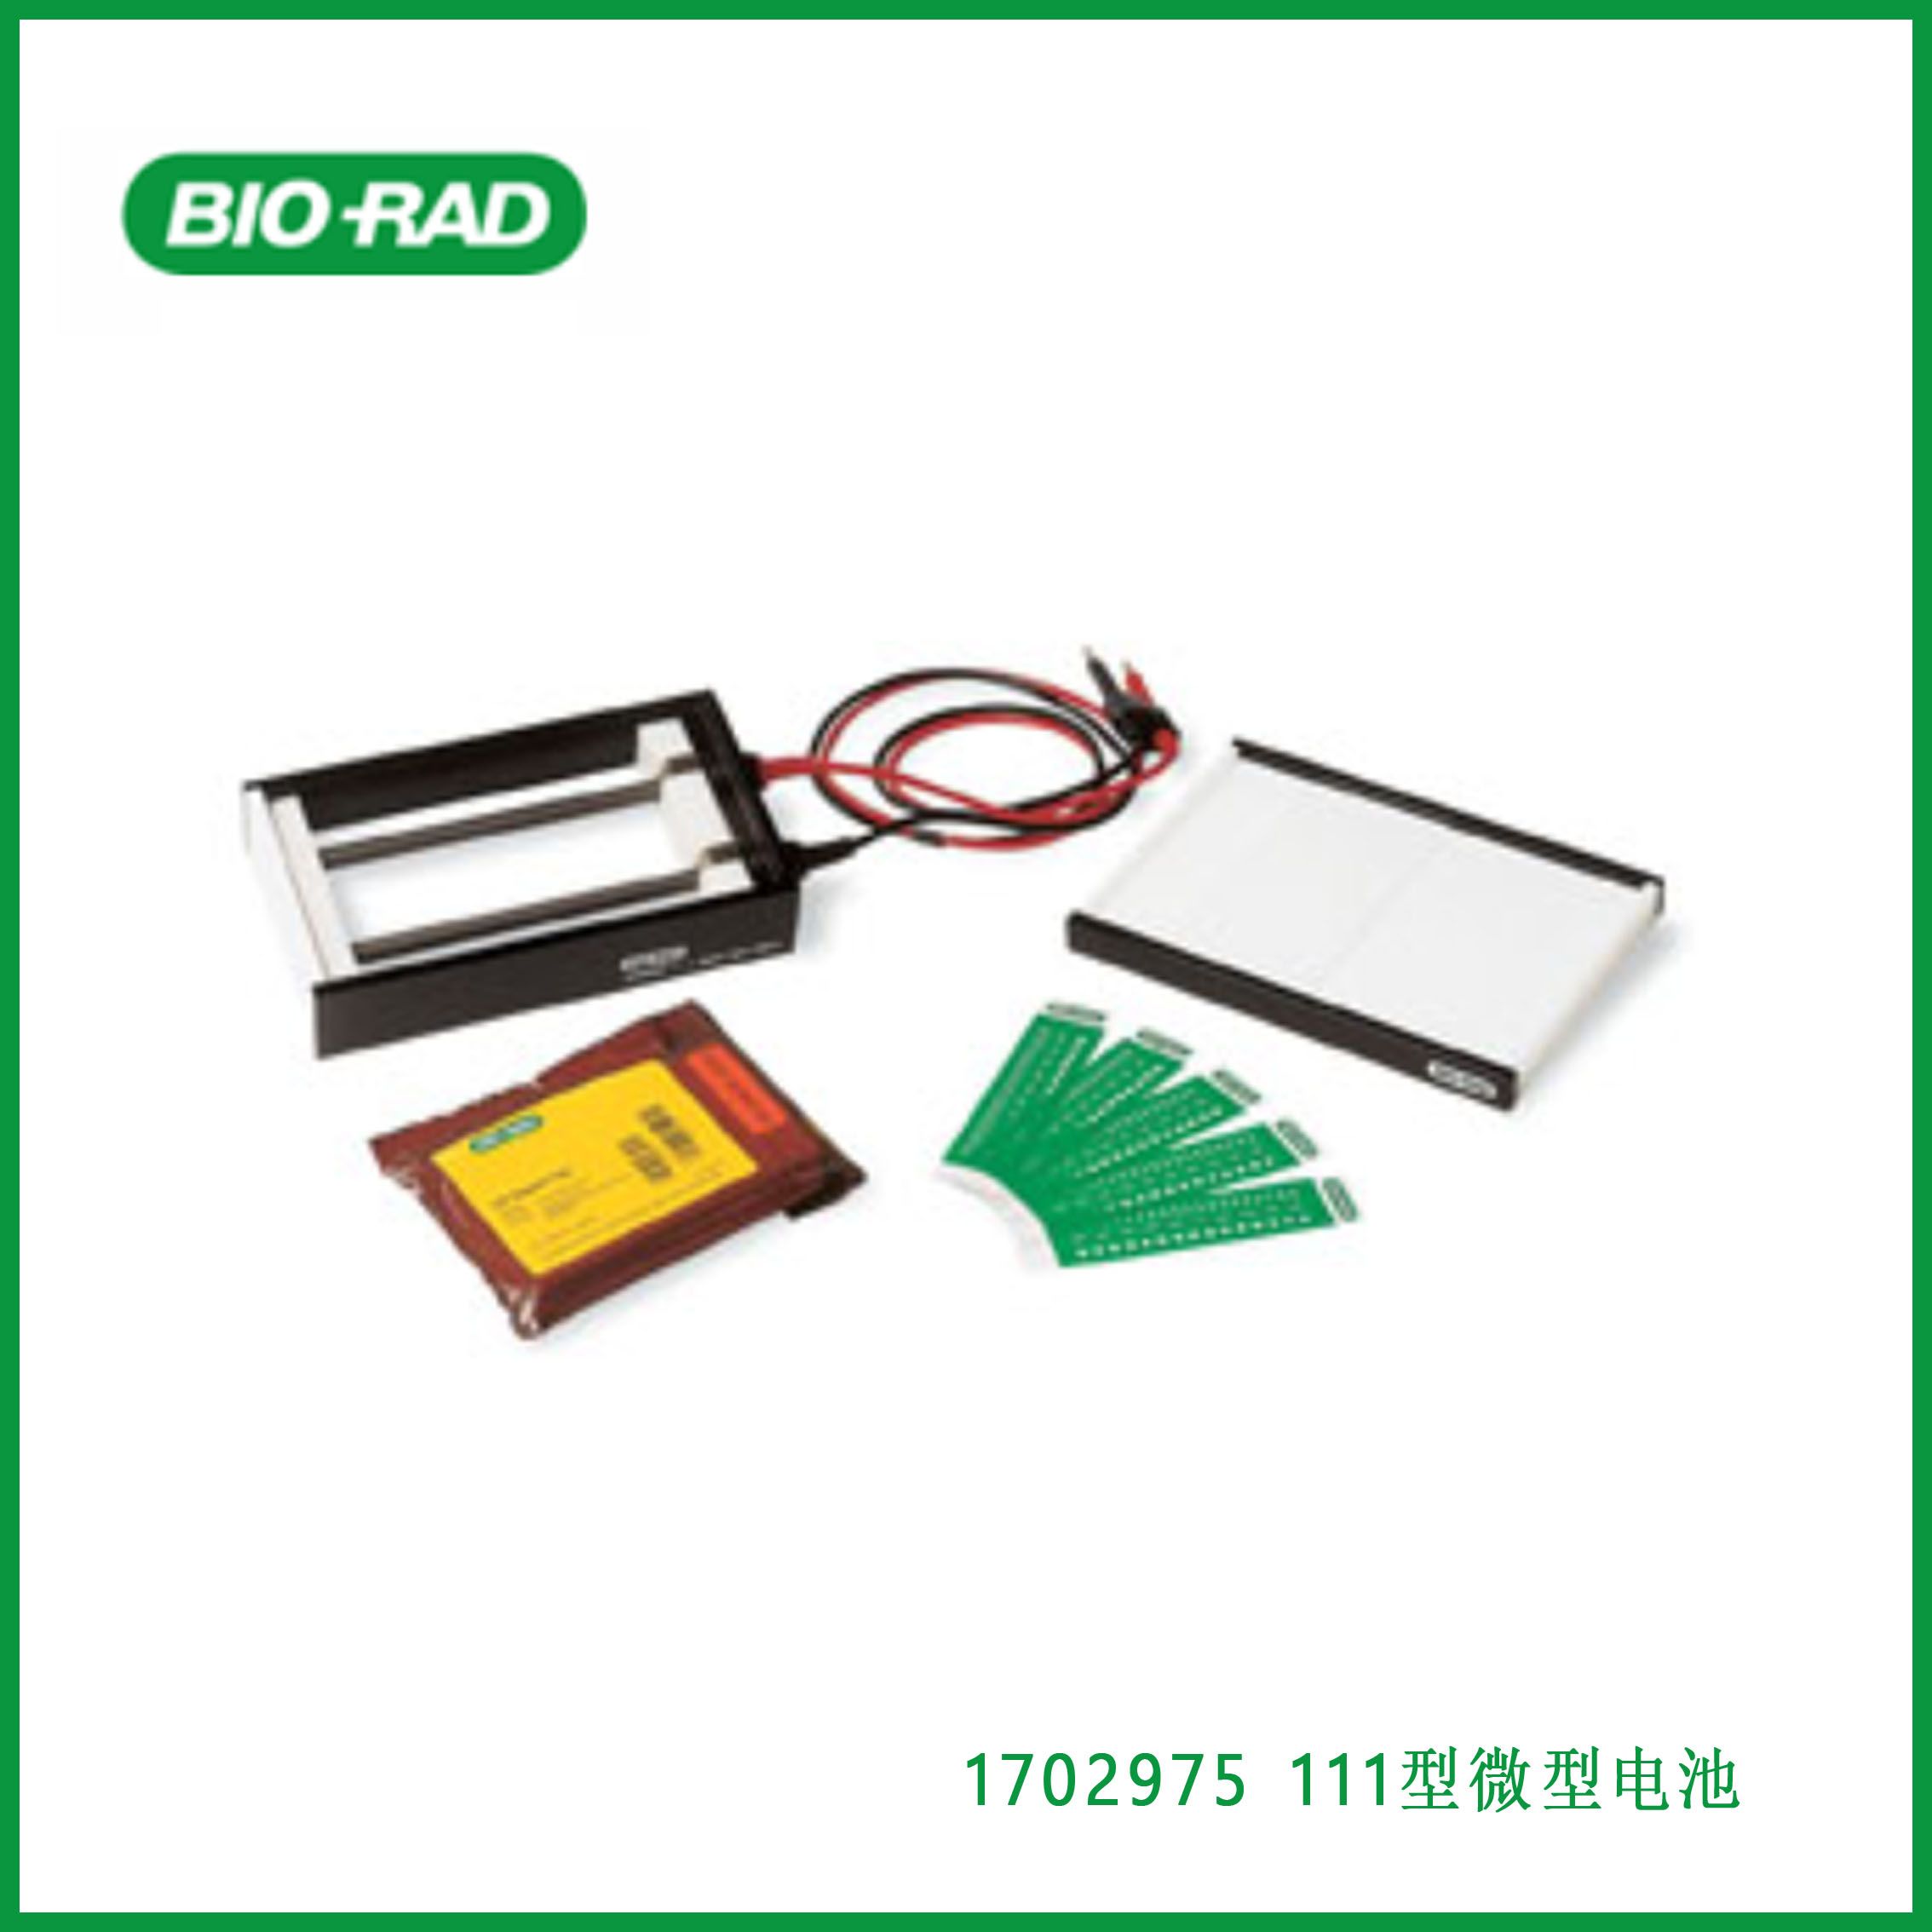 伯乐Bio-Rad1702975Model 111 Mini IEF Cell， 111型微型电池，现货